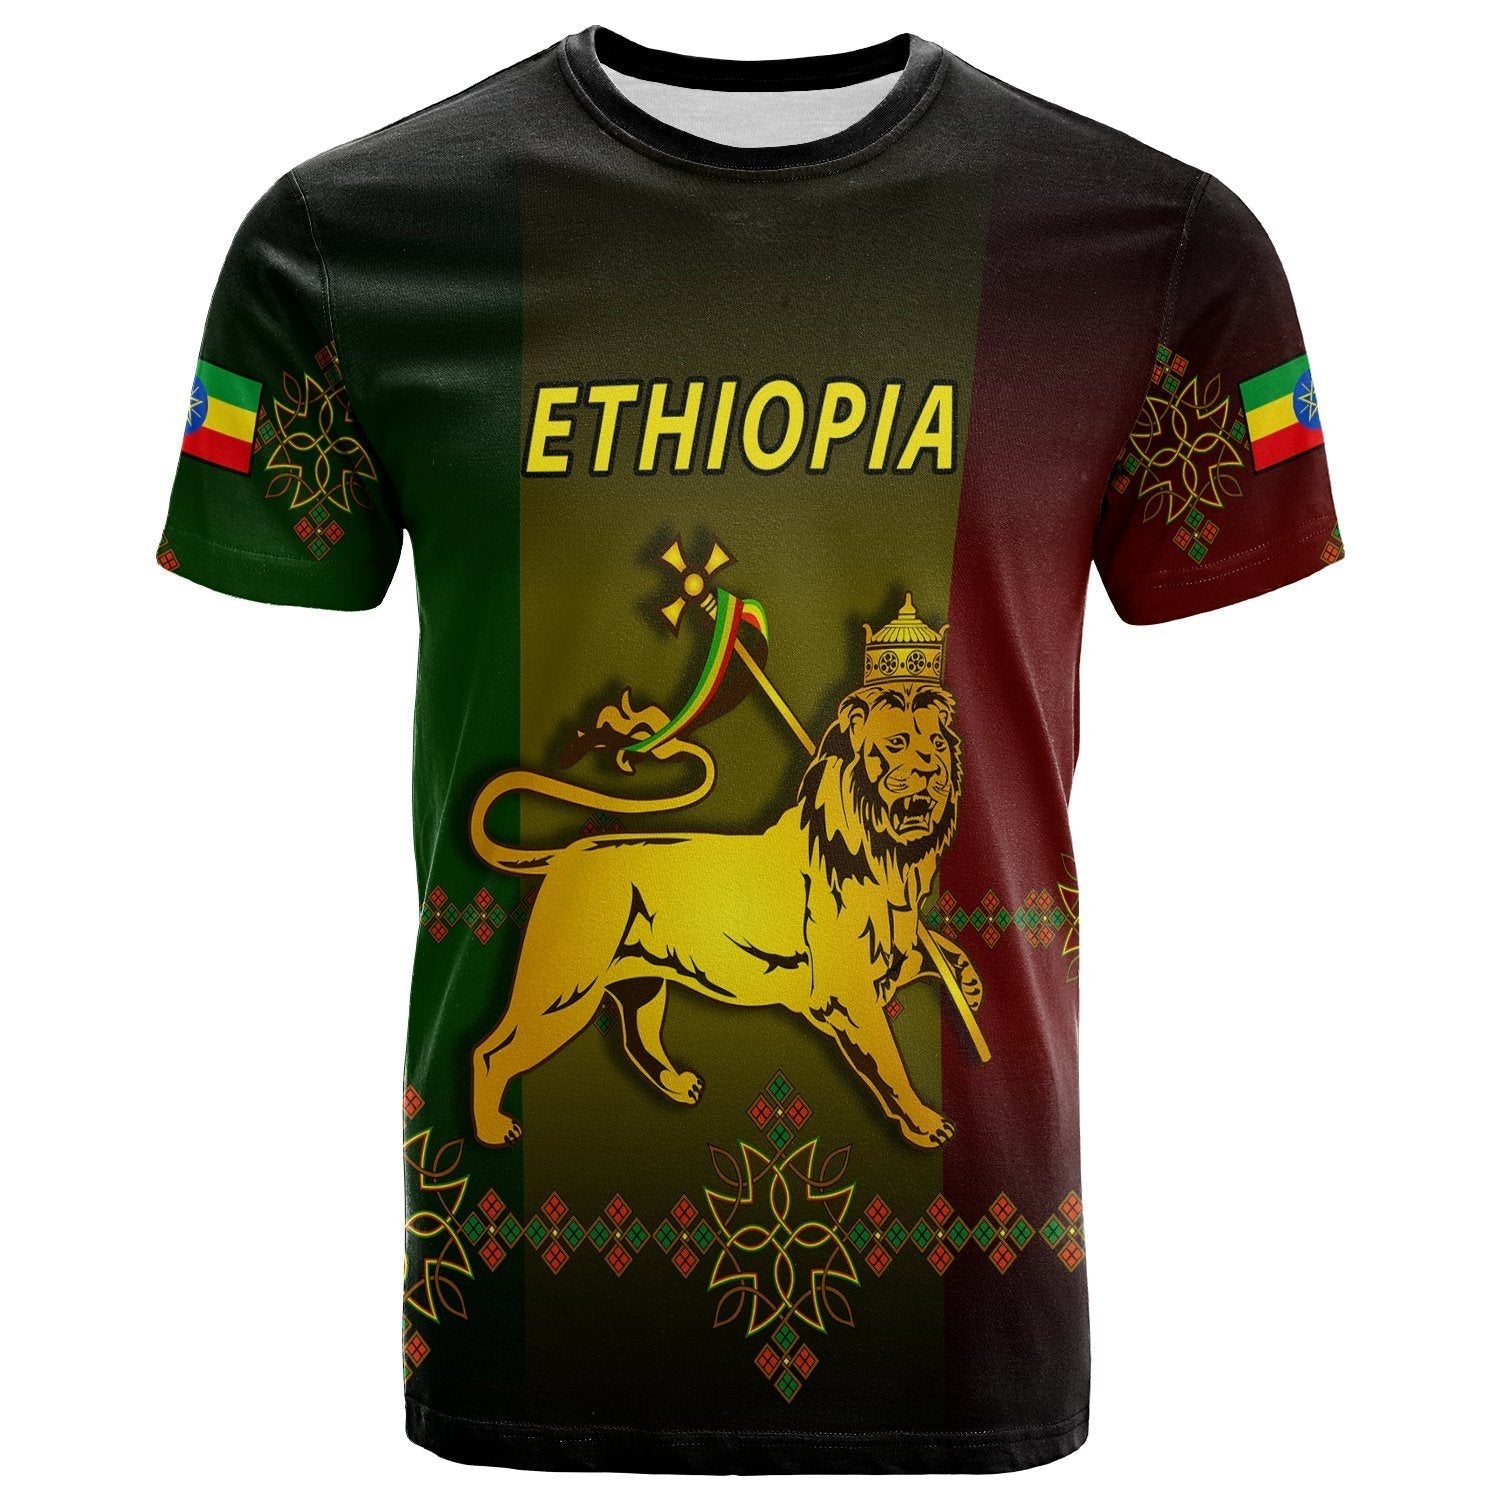 ethiopia-t-shirt